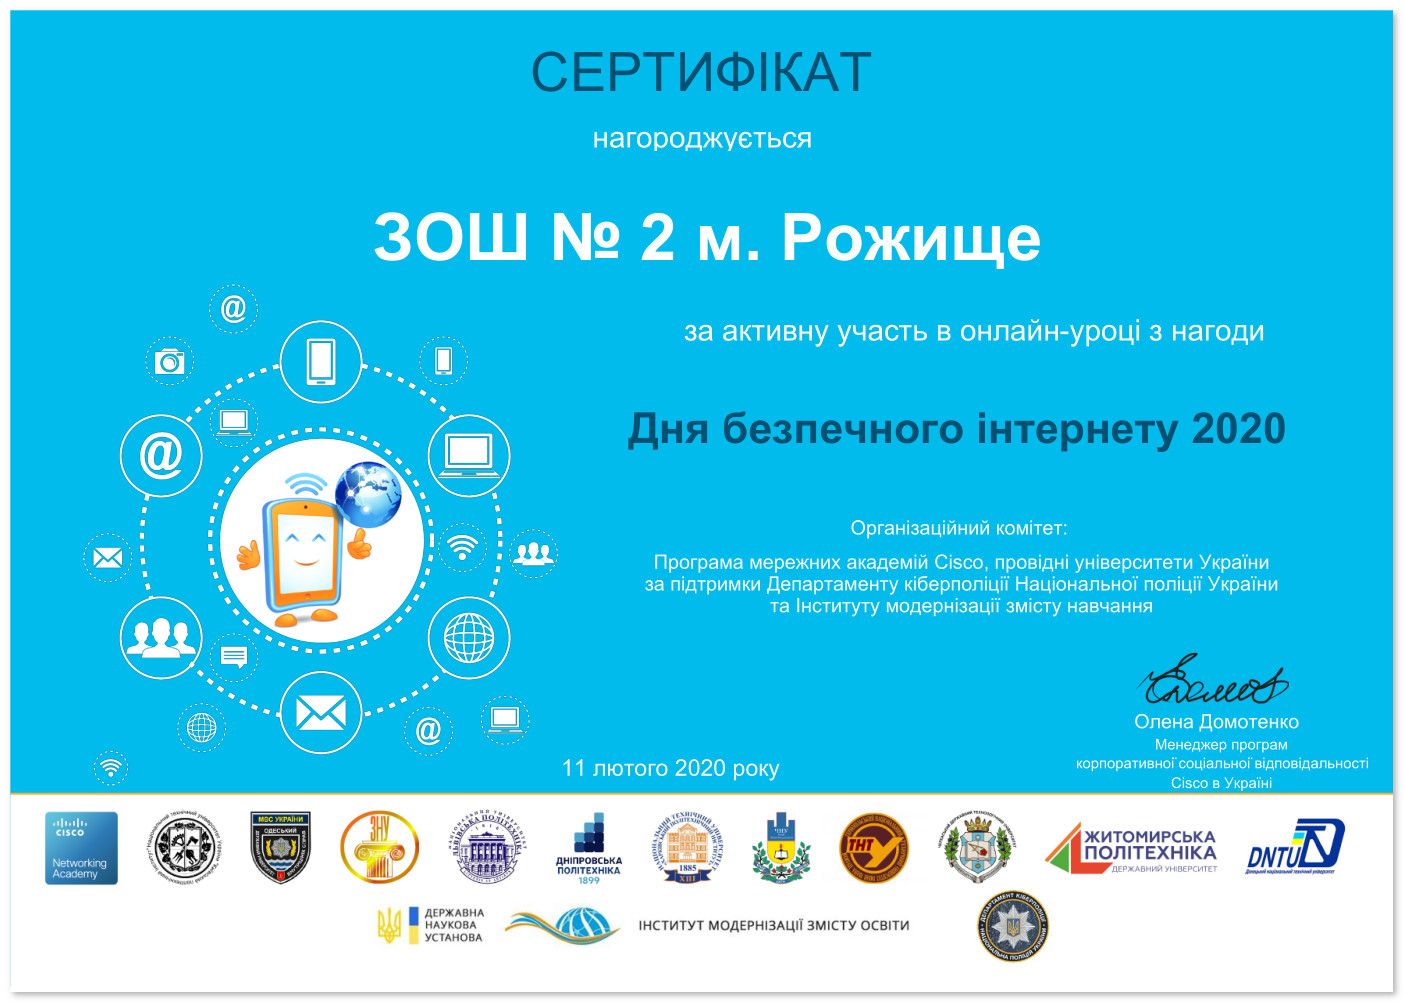 Сертифікат учасника онлайн-уроку до "Дня безпечного інтернету 2020"